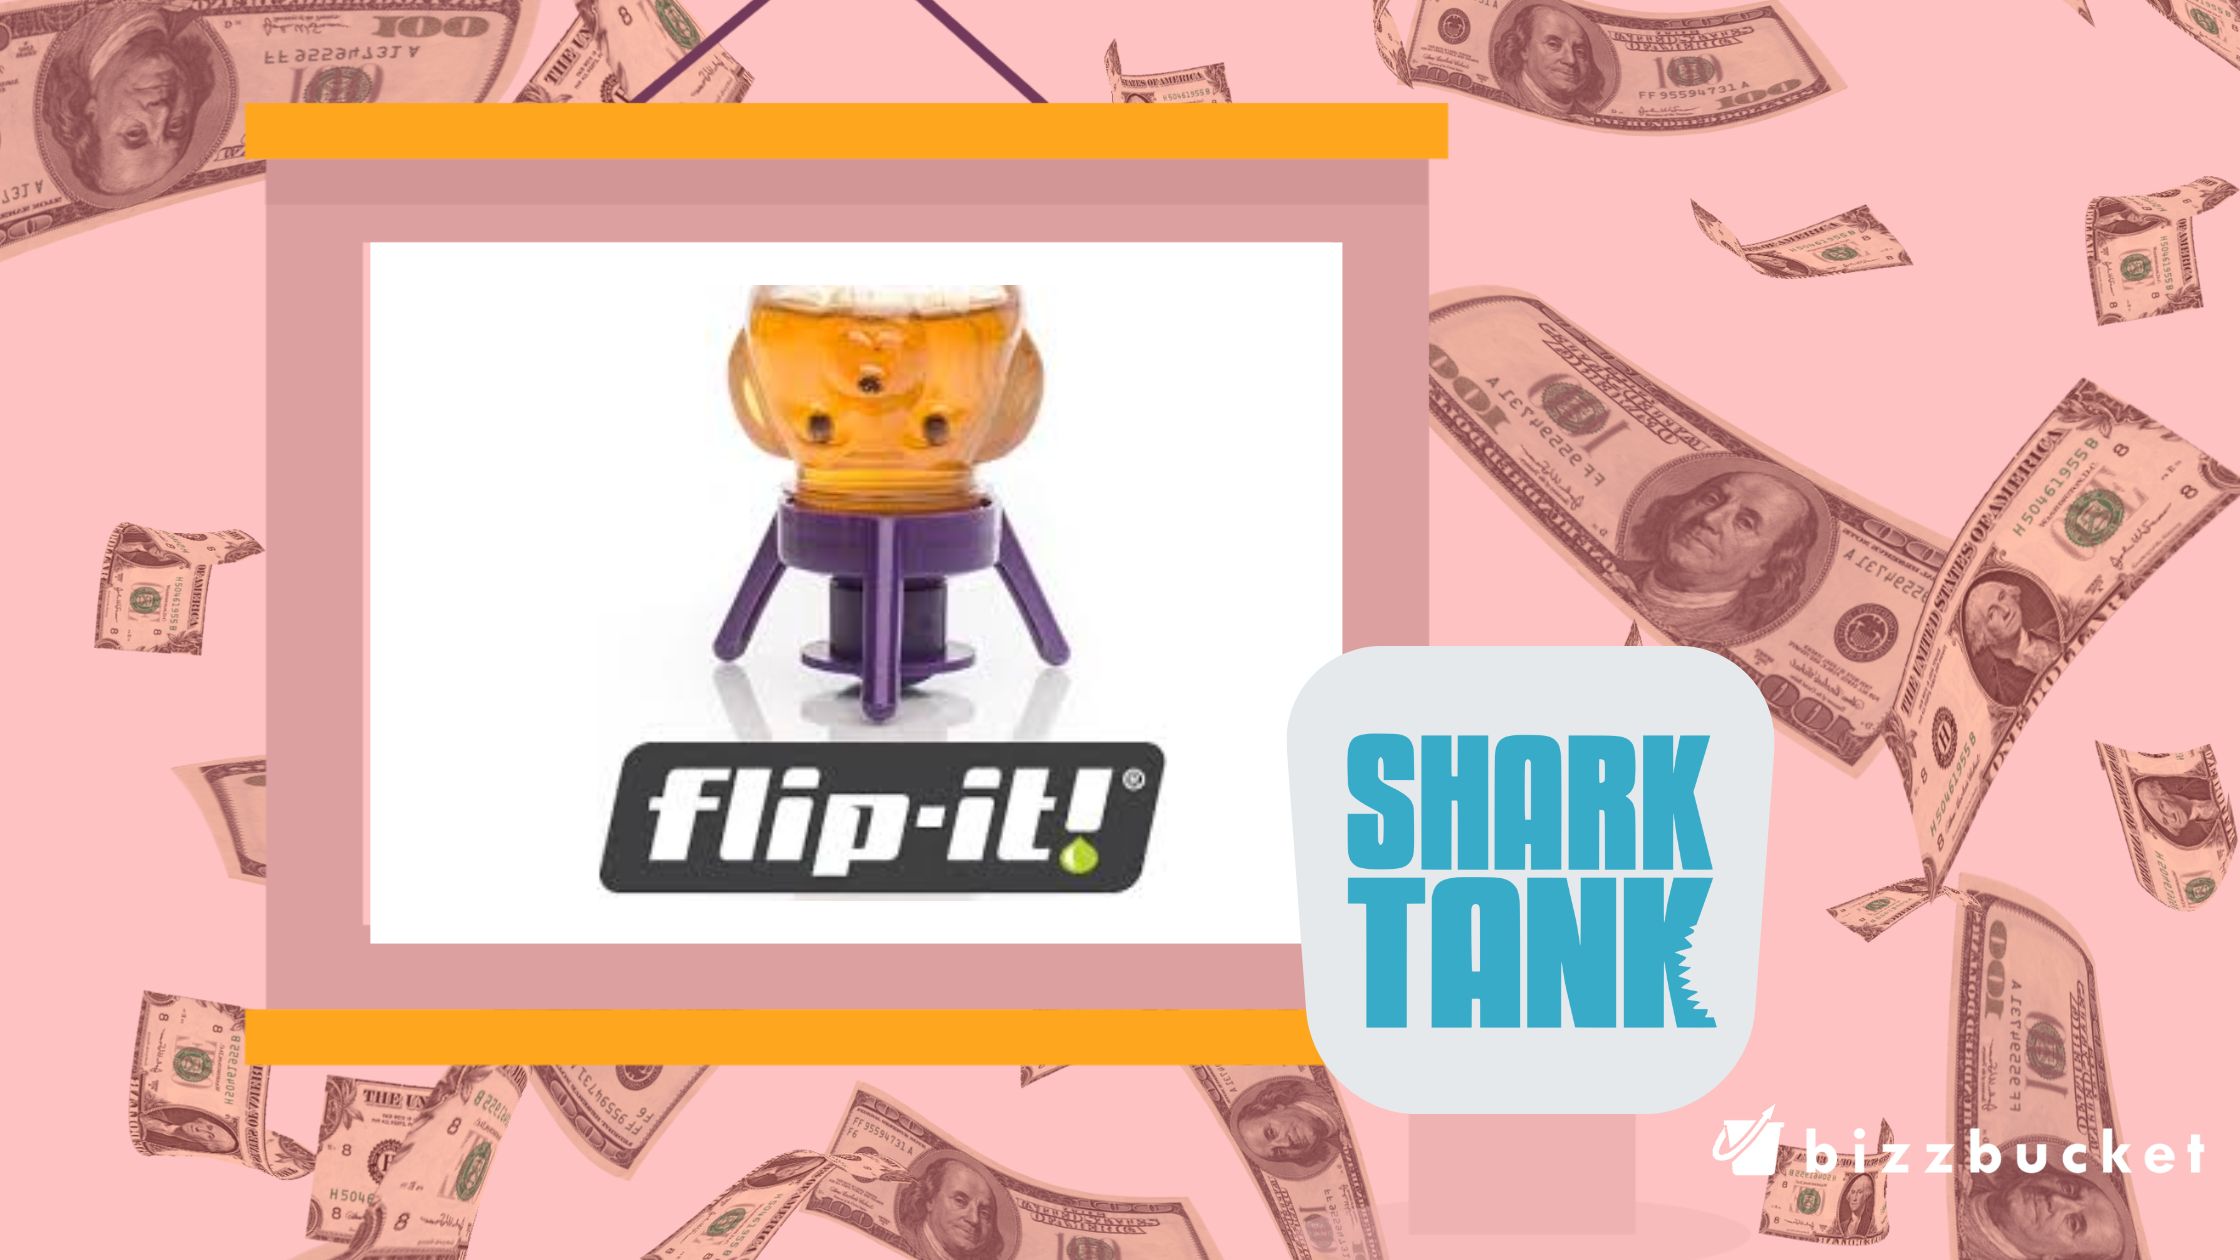 Flip-it cap shark tank